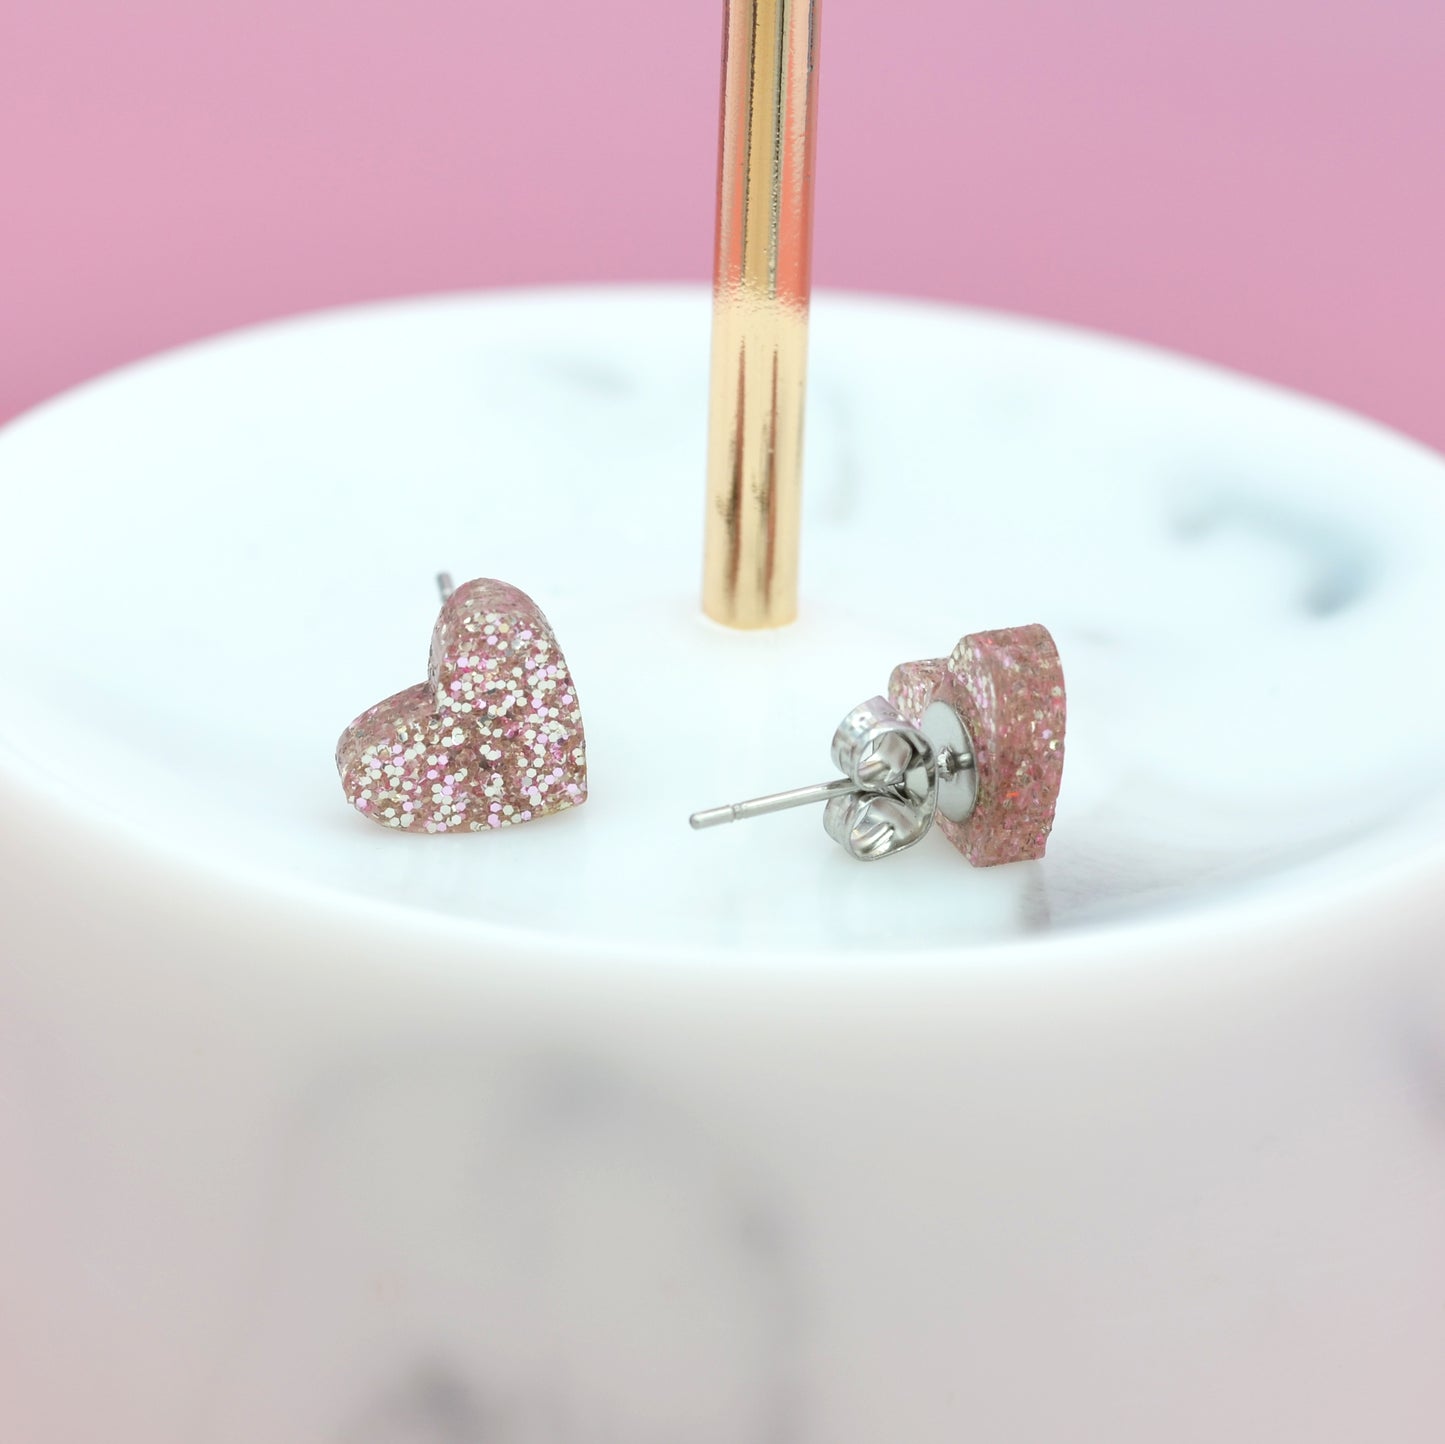 NEW Mini Rose Gold Glitter Love Heart Earrings Studs